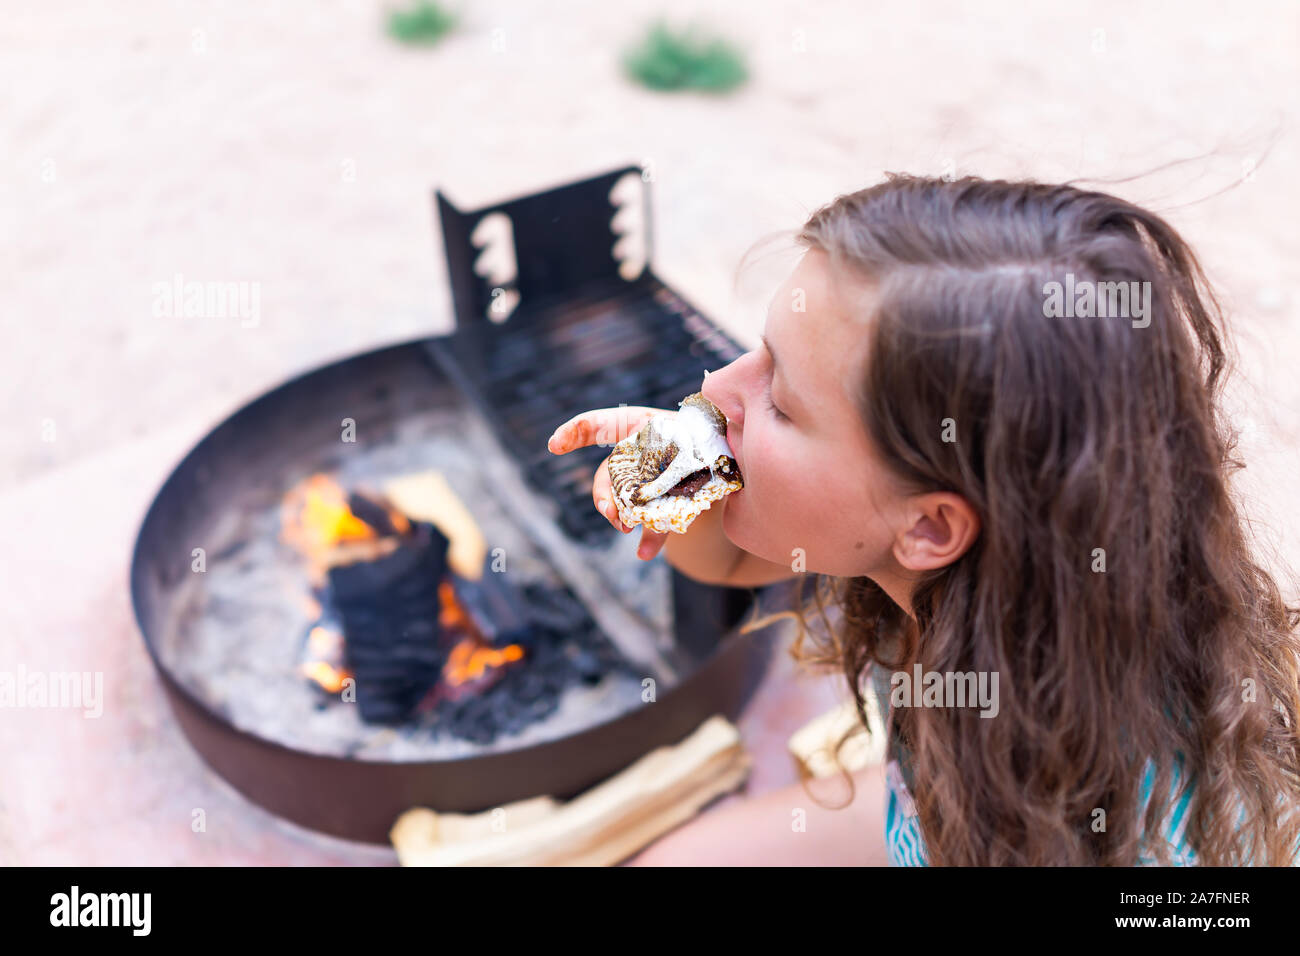 Giovane donna mangiare gooey arrosto di marshmallows smores con cioccolato e torta di riso cracker dal fuoco in campeggio campfire grill Foto Stock